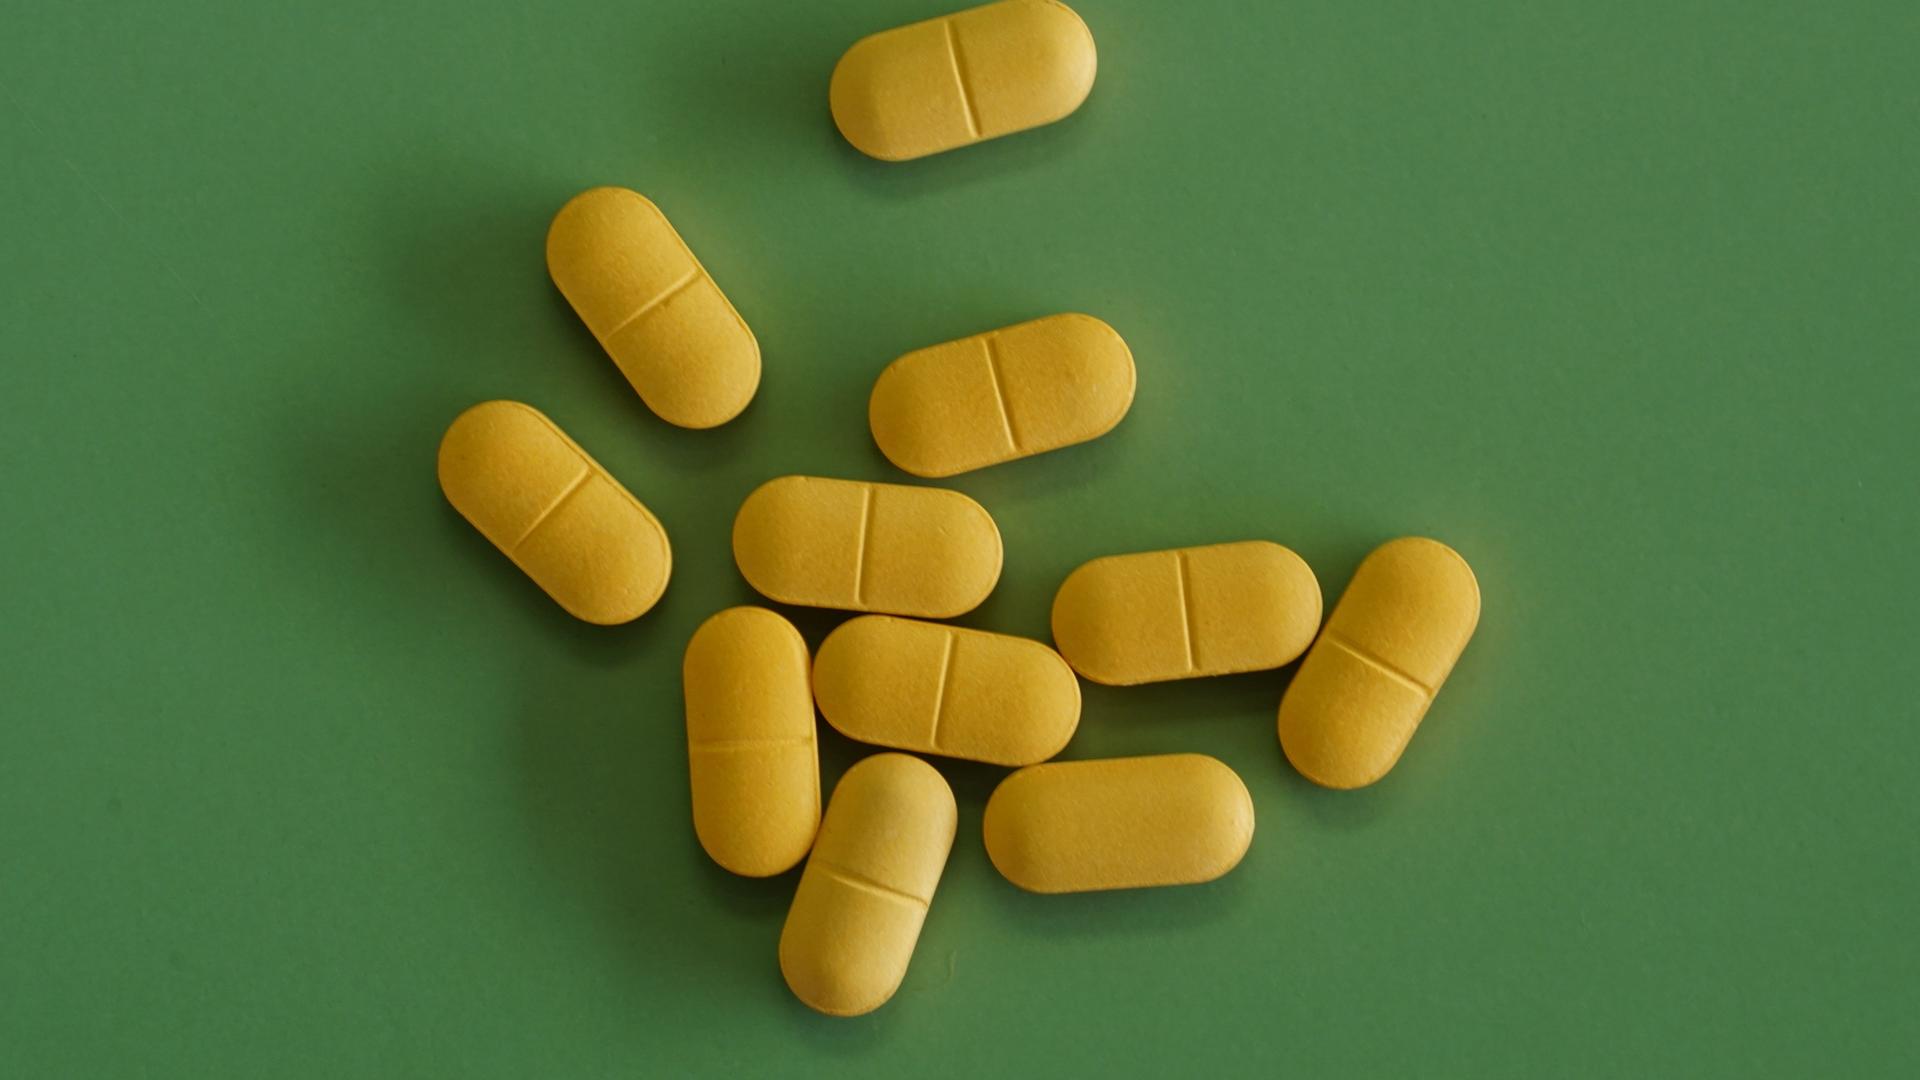 Gelbe, längliche Pillen auf grünem Grund.